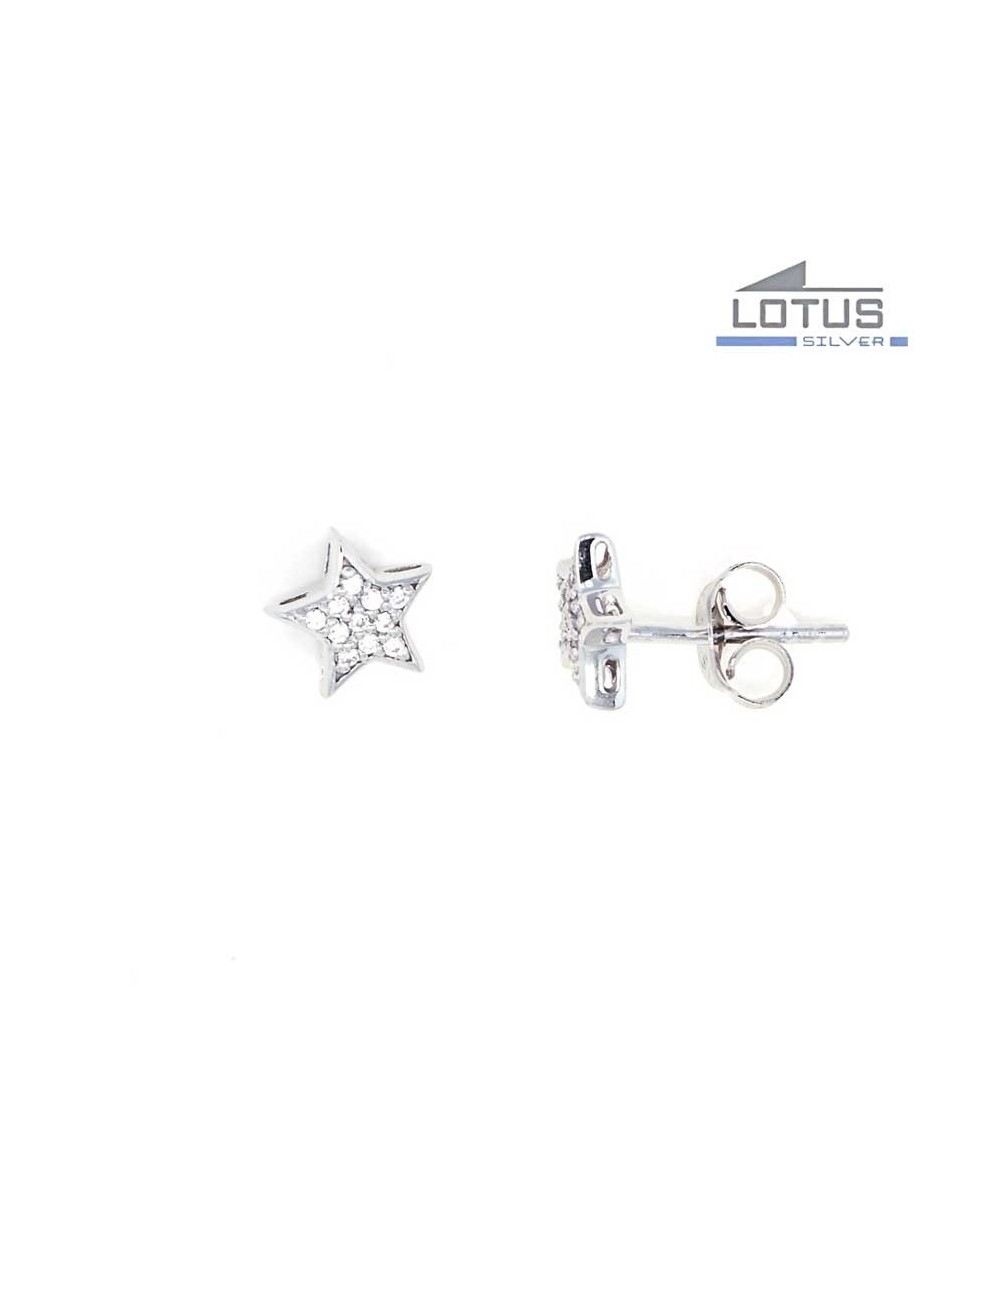 pendientes-lotus-silver-estrella-circonitas-lp1622-41